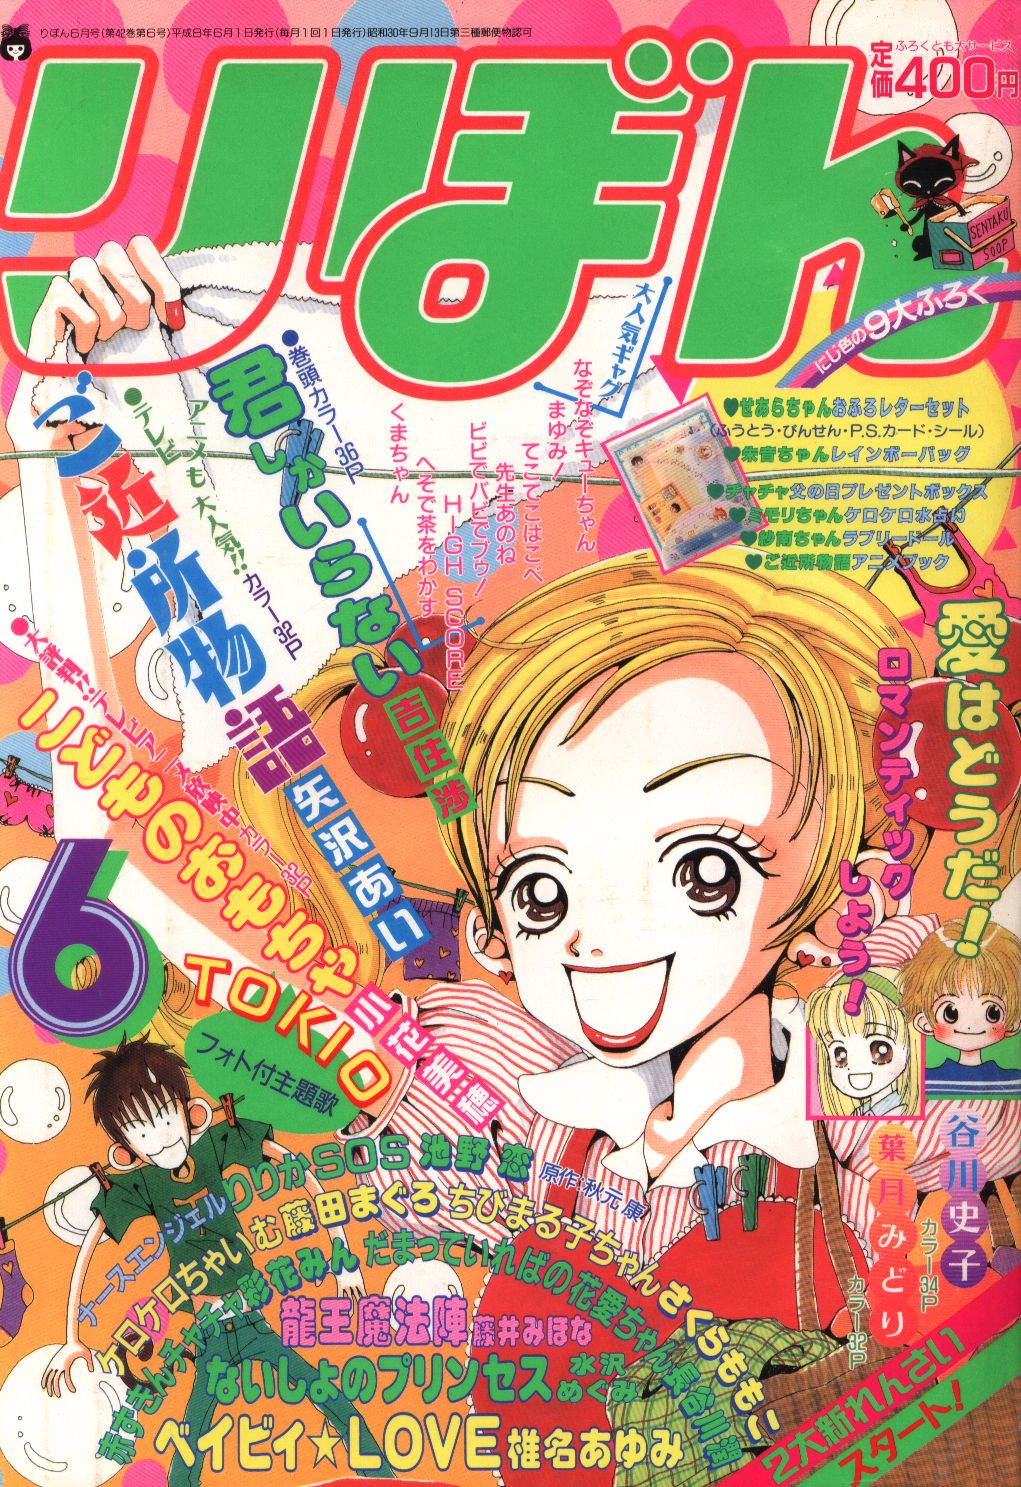 新入荷 りぼん 1998年 13冊セット 増刊号 オリジナル 雑誌